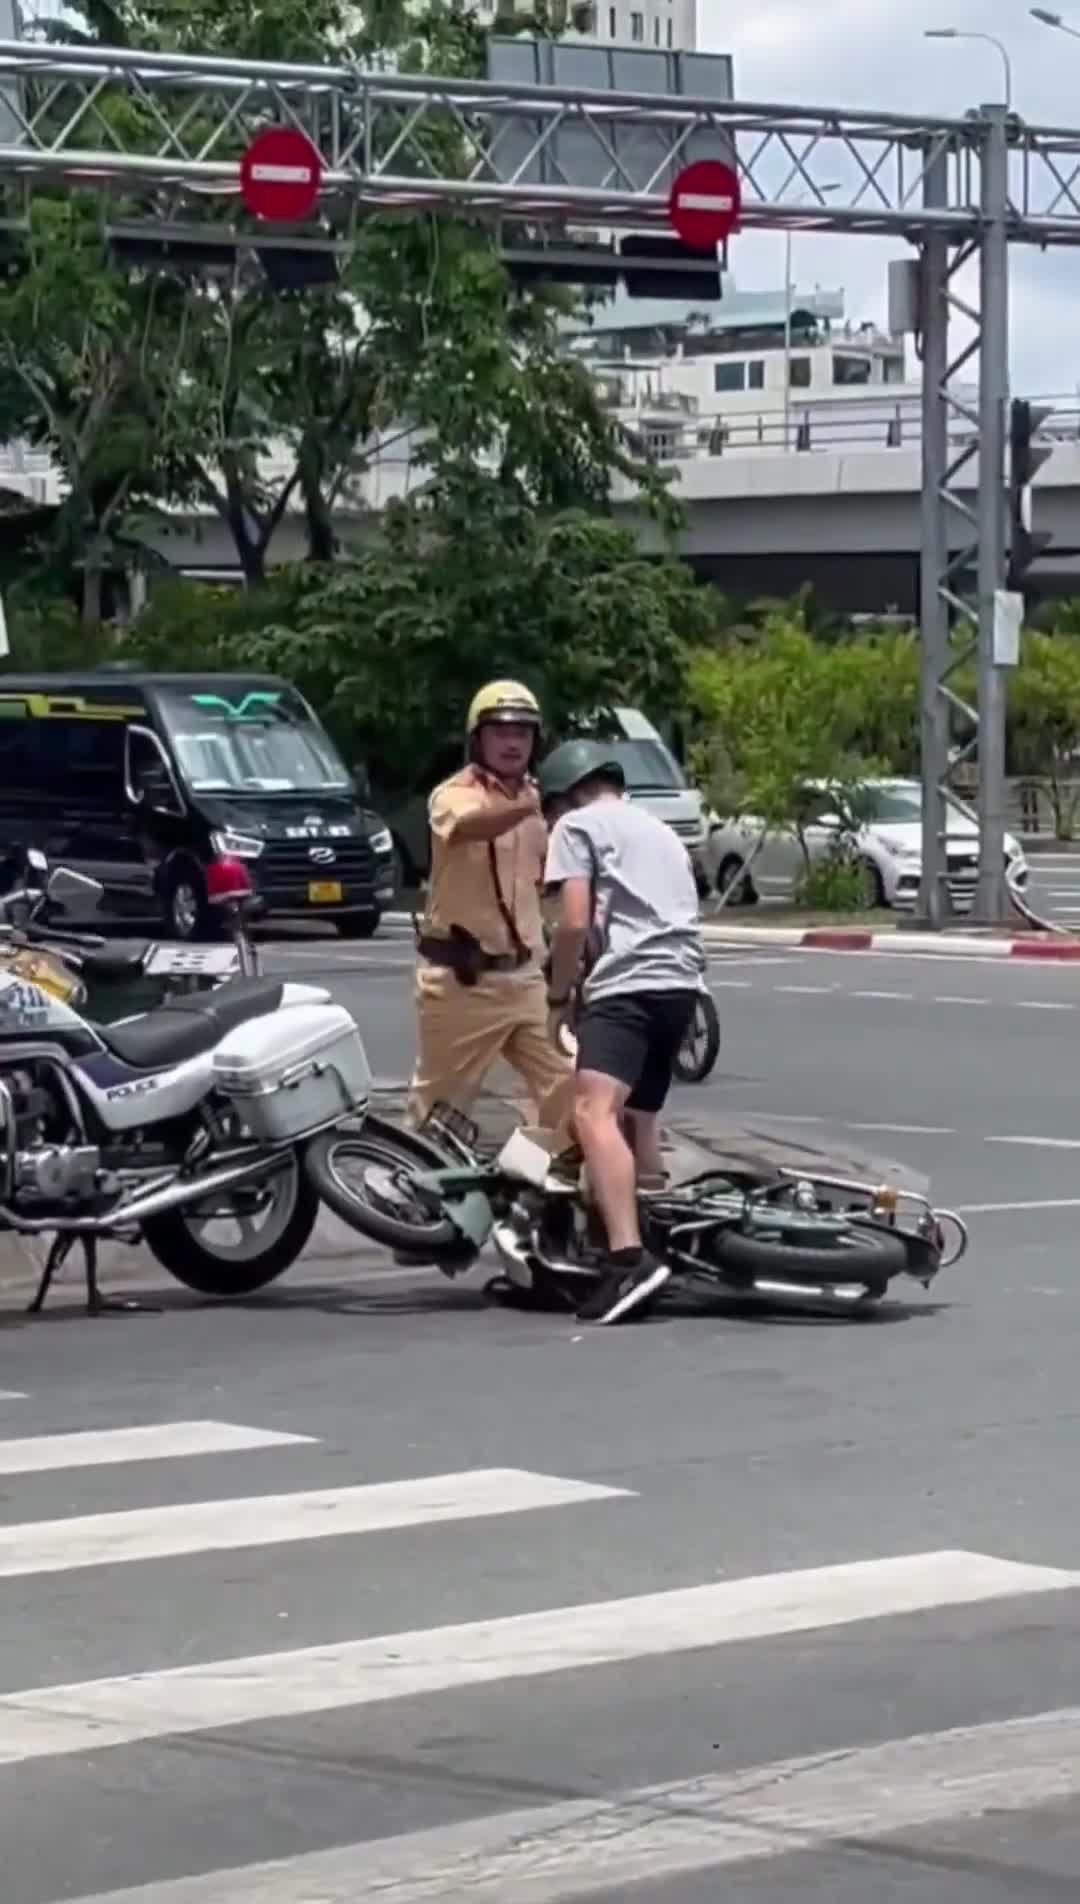 An ninh - Hình sự - Đang xác minh clip người mặc cảnh phục CSGT khống chế và đạp vào người đi xe máy ở Tp.HCM (Hình 2).